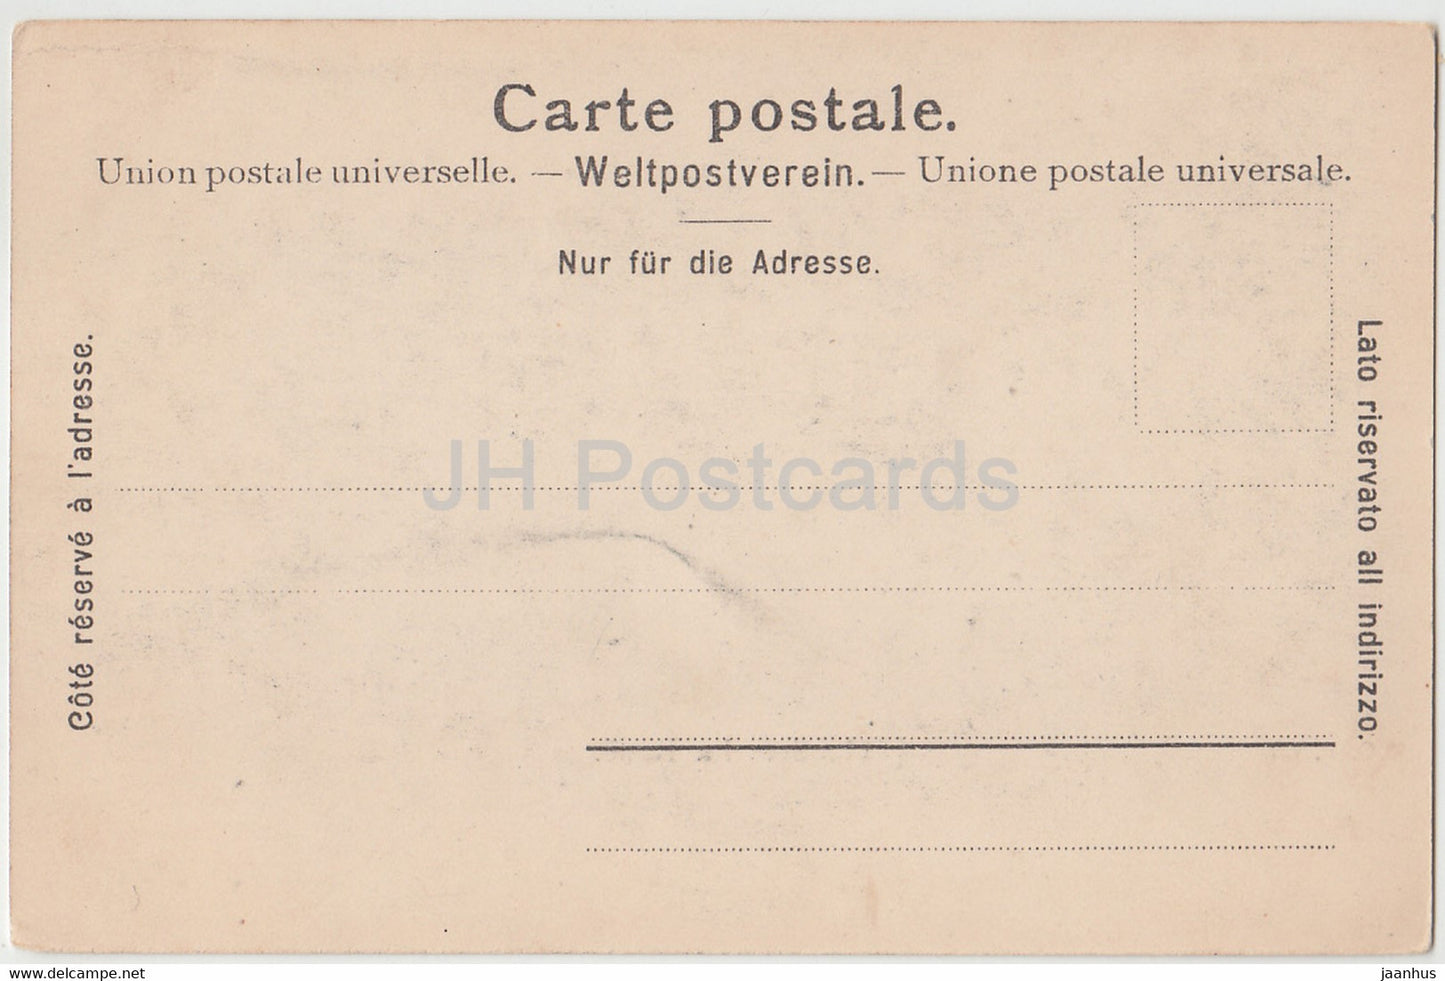 Genf - Genf - La Rade - Dampfer - Schiff - 127 - alte Postkarte - Schweiz - unbenutzt